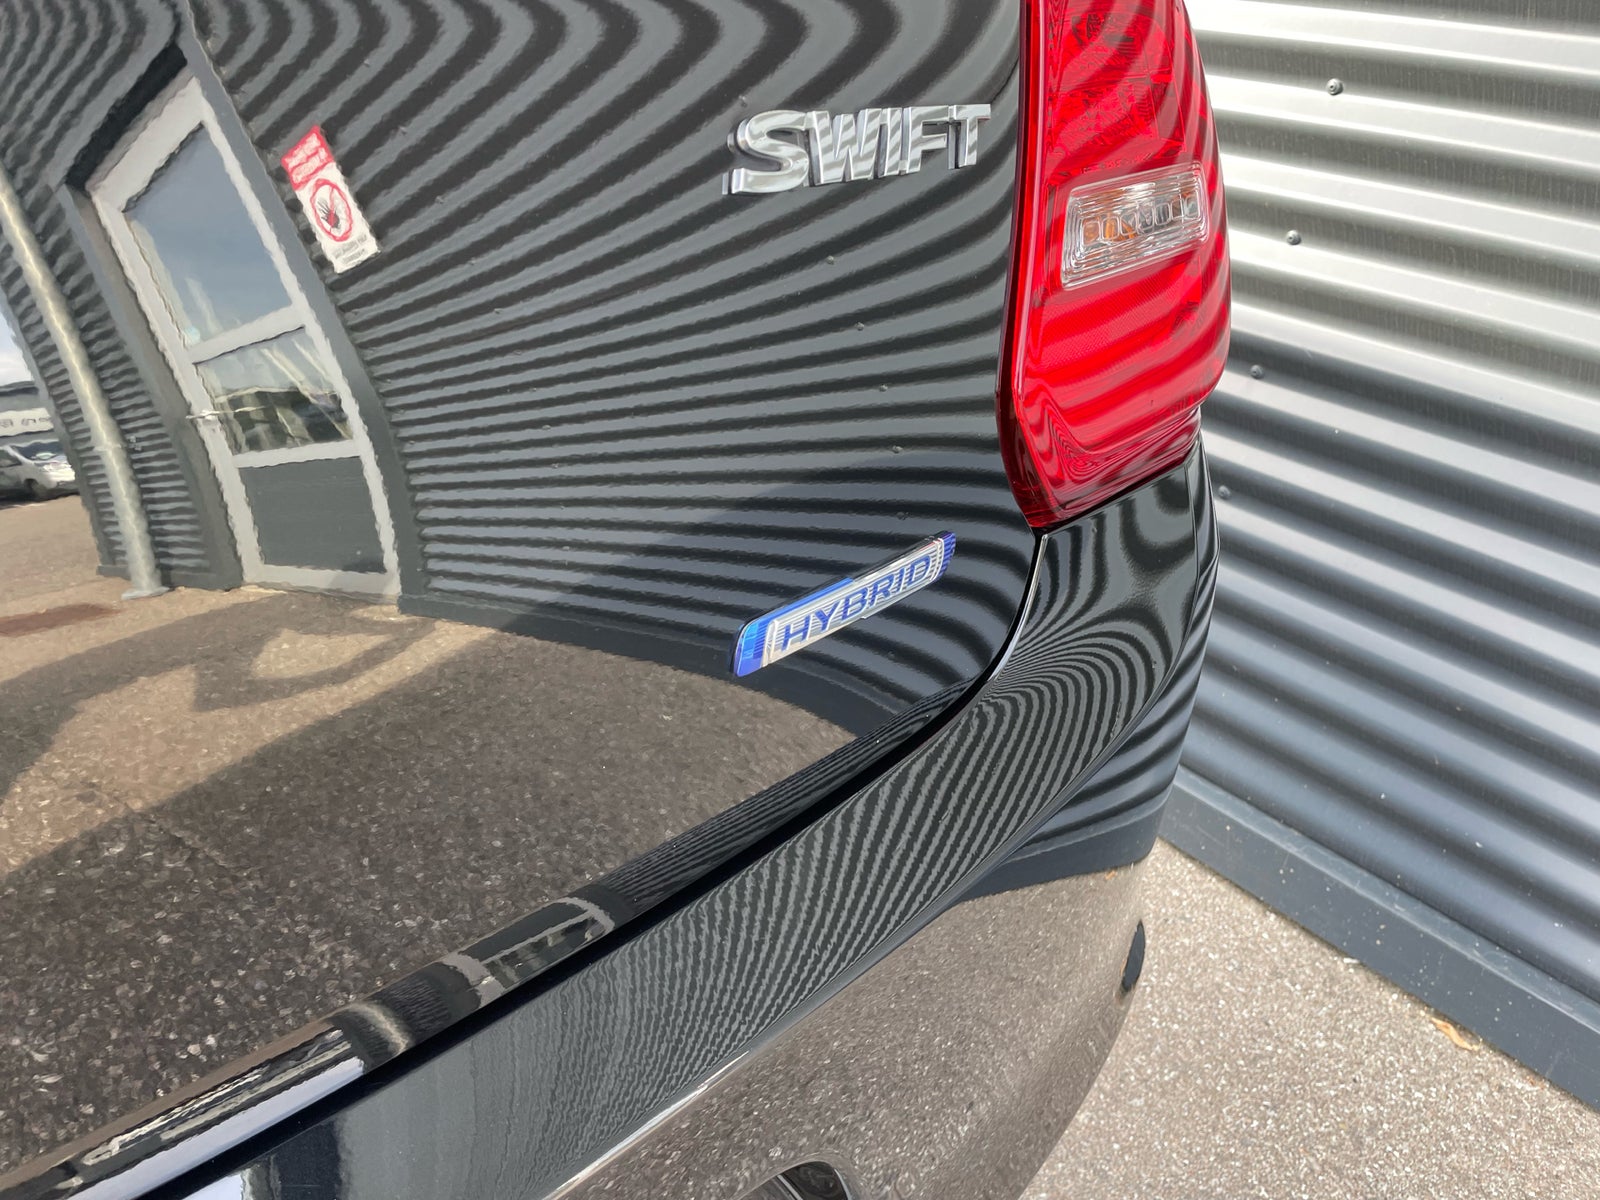 Suzuki Swift 1,2 mHybrid Exclusive Benzin modelår 2020 km